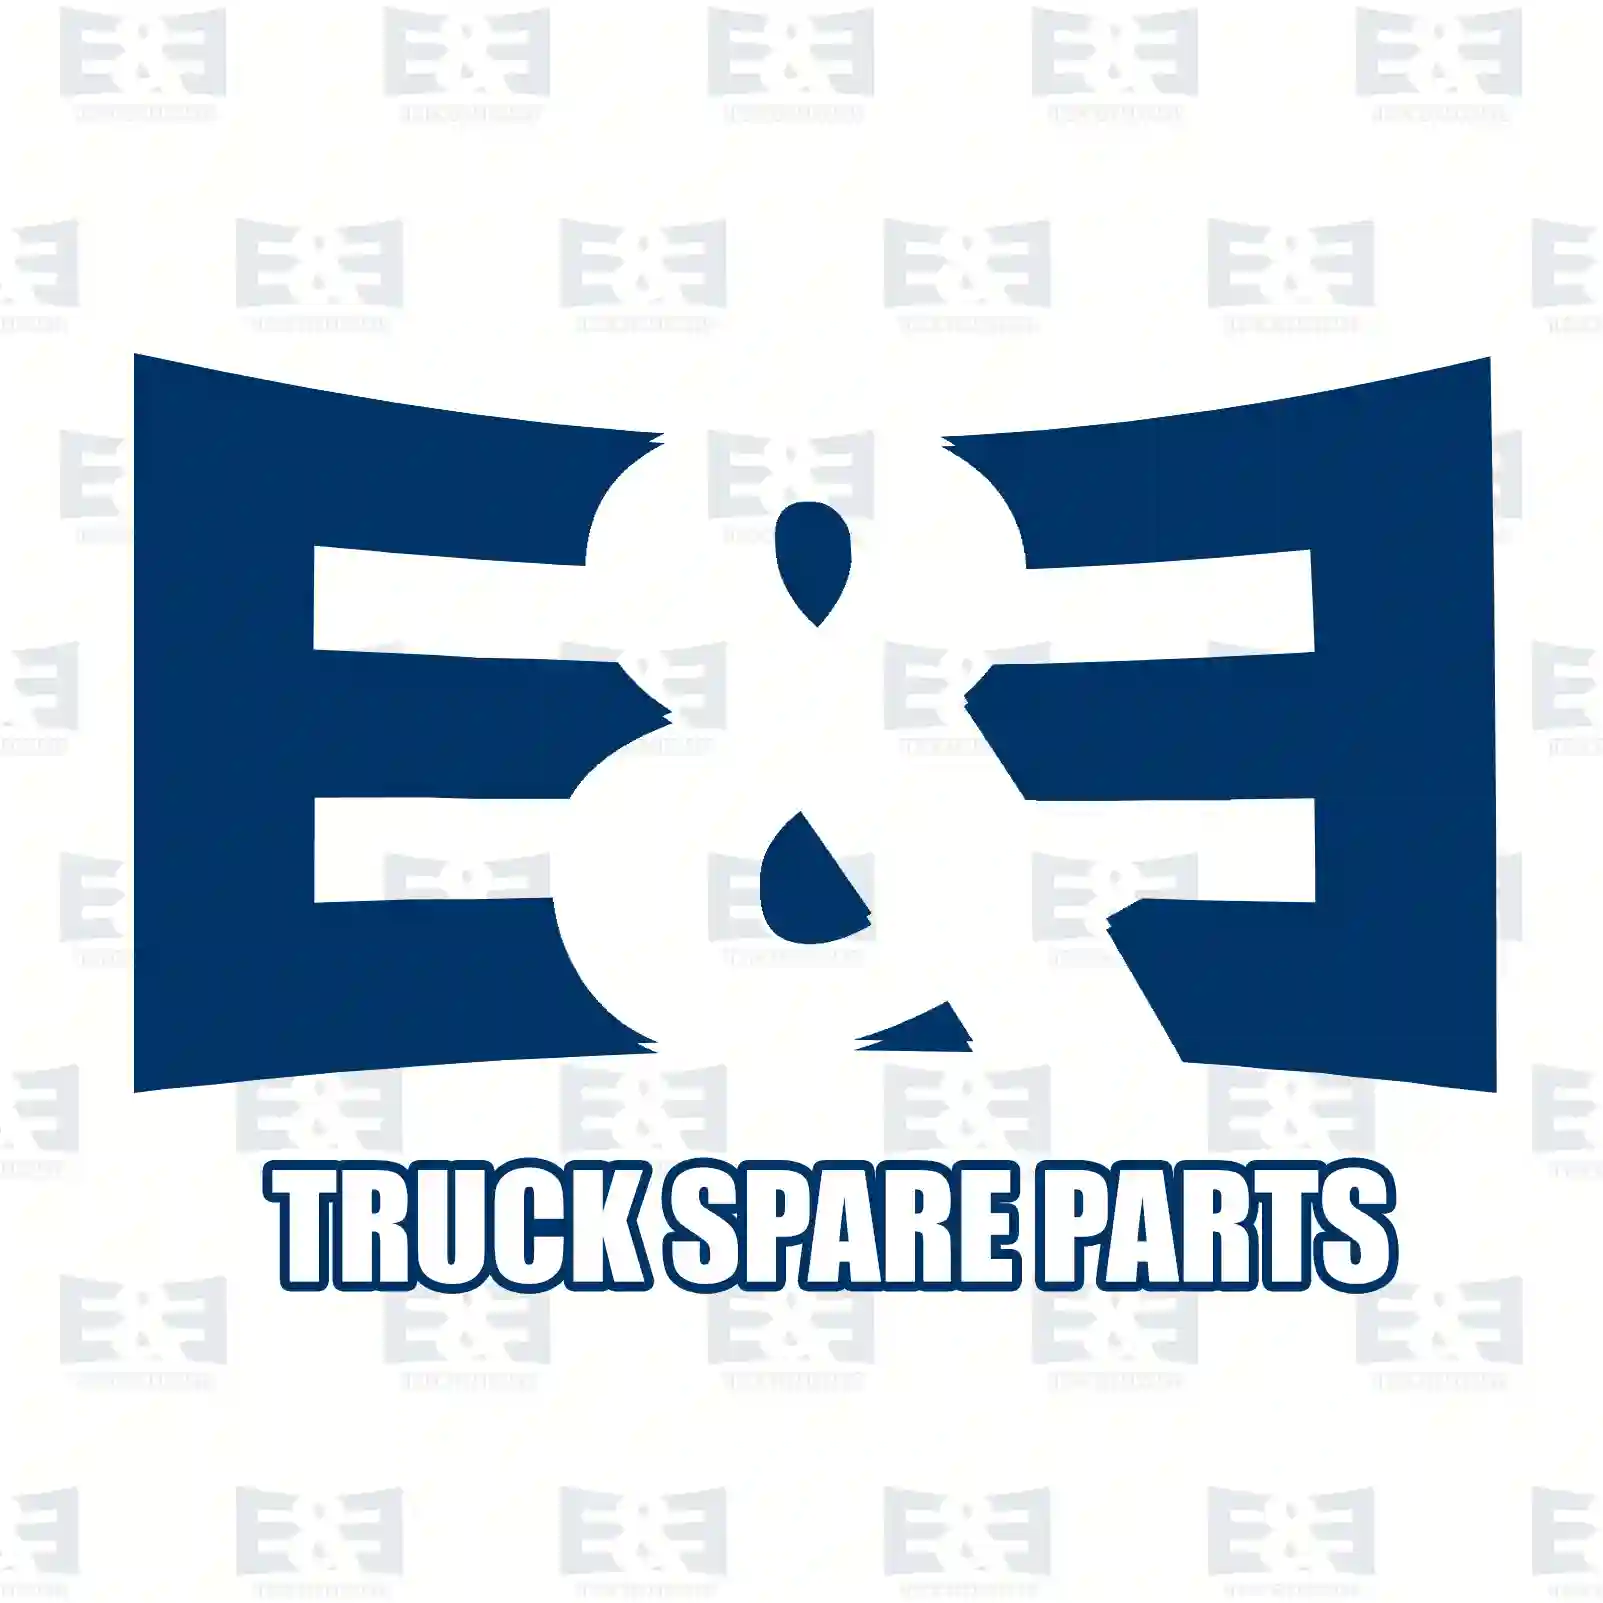 Condenser, 2E2276373, 22212990, 2276892 ||  2E2276373 E&E Truck Spare Parts | Truck Spare Parts, Auotomotive Spare Parts Condenser, 2E2276373, 22212990, 2276892 ||  2E2276373 E&E Truck Spare Parts | Truck Spare Parts, Auotomotive Spare Parts